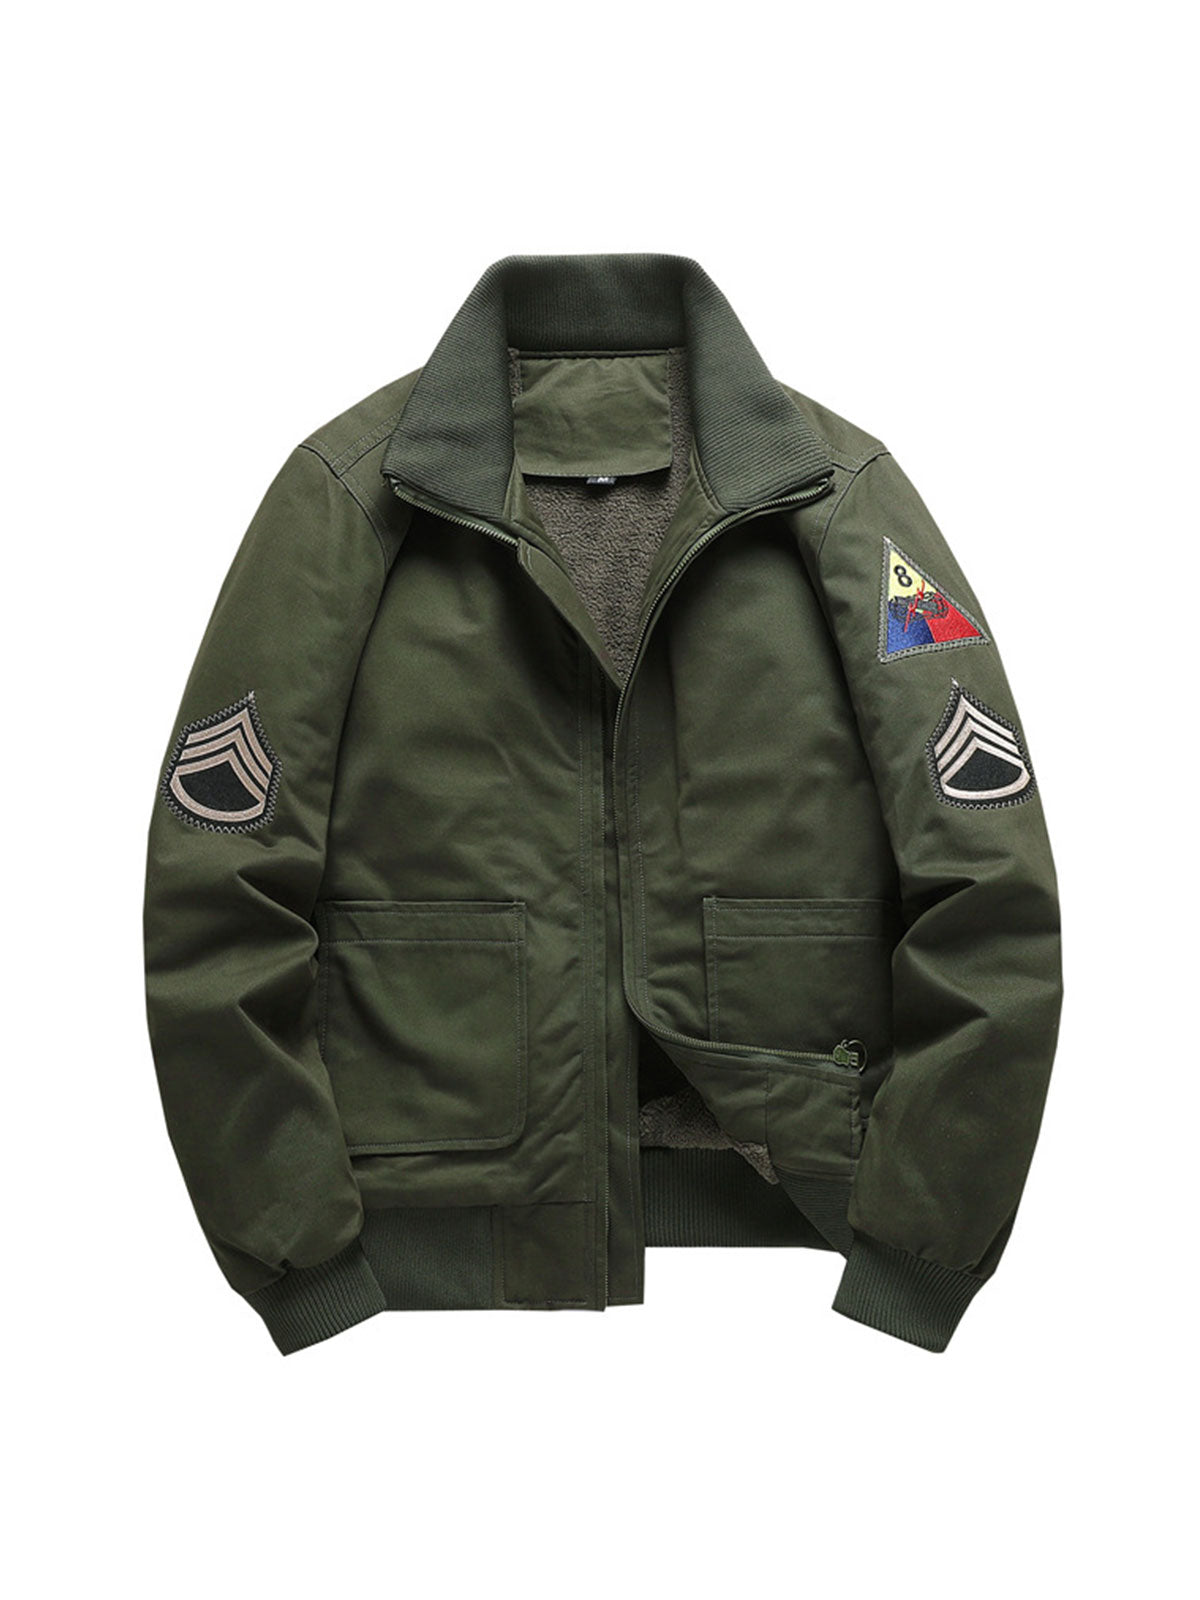 Men's Vintage MA1 Air Force Bomber Jacket